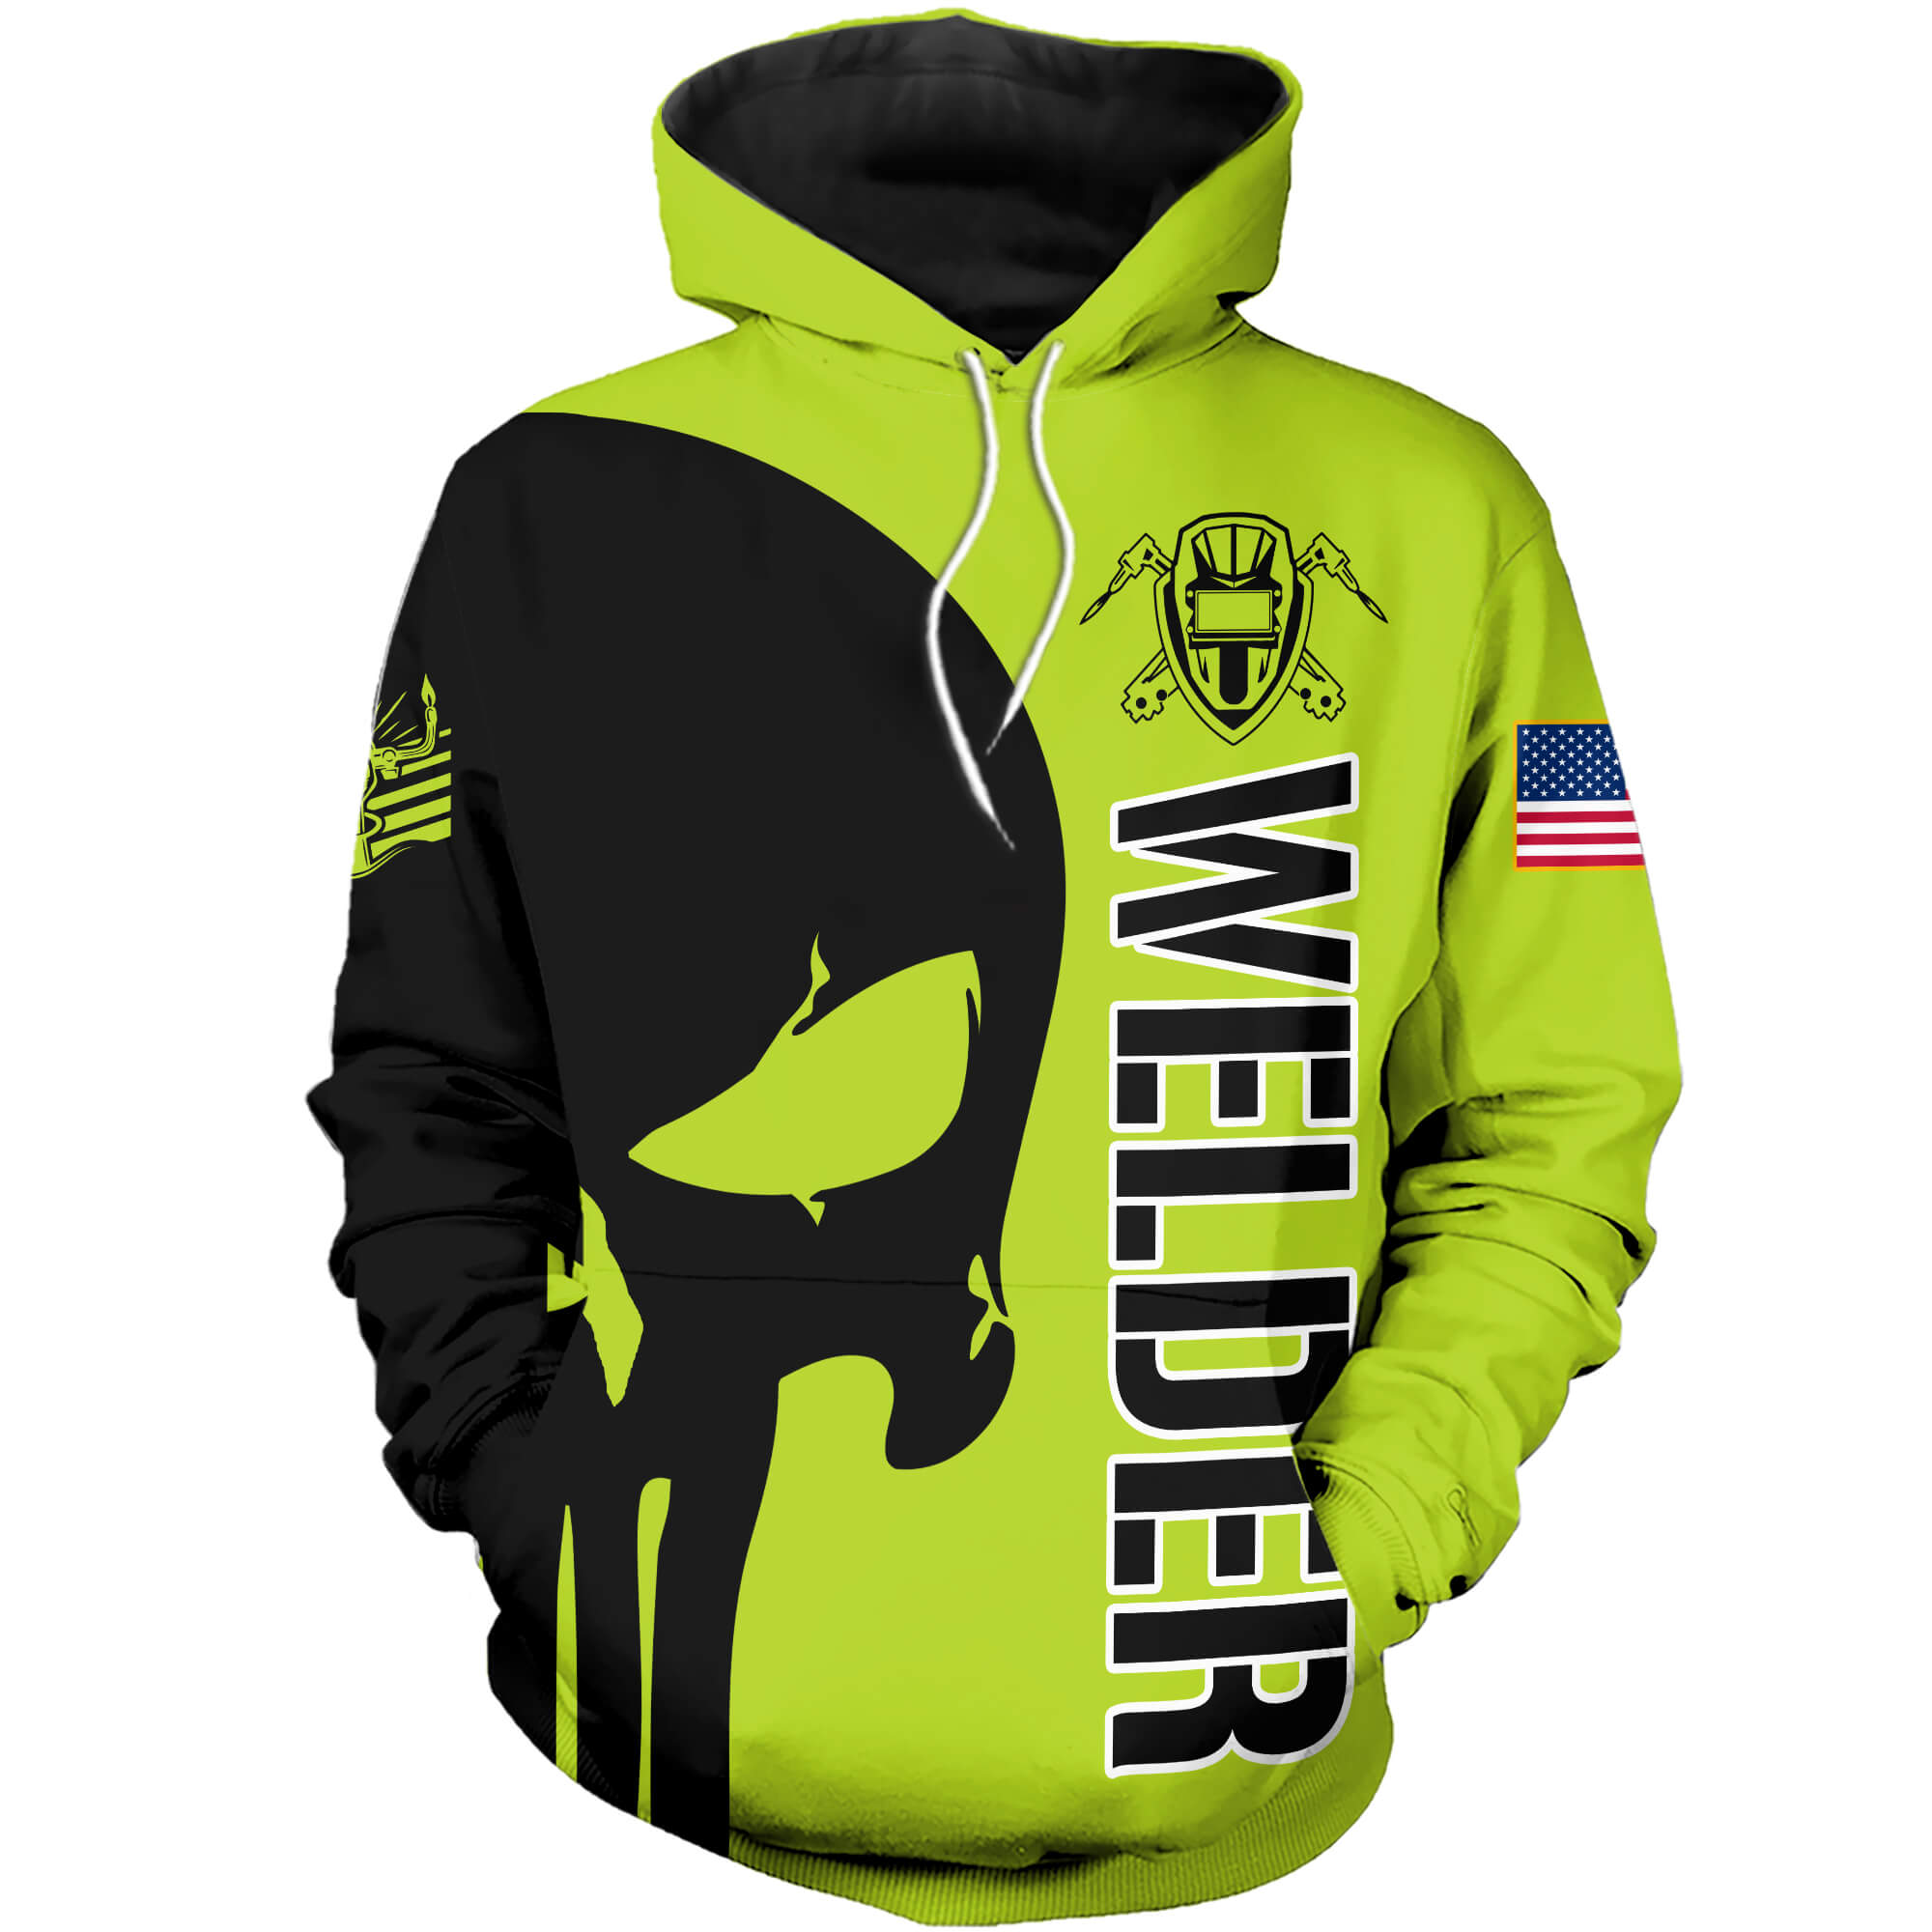 3D Printed Welder Punisher Skull T-shirt and Sweatshirt – HOTHOT 220120